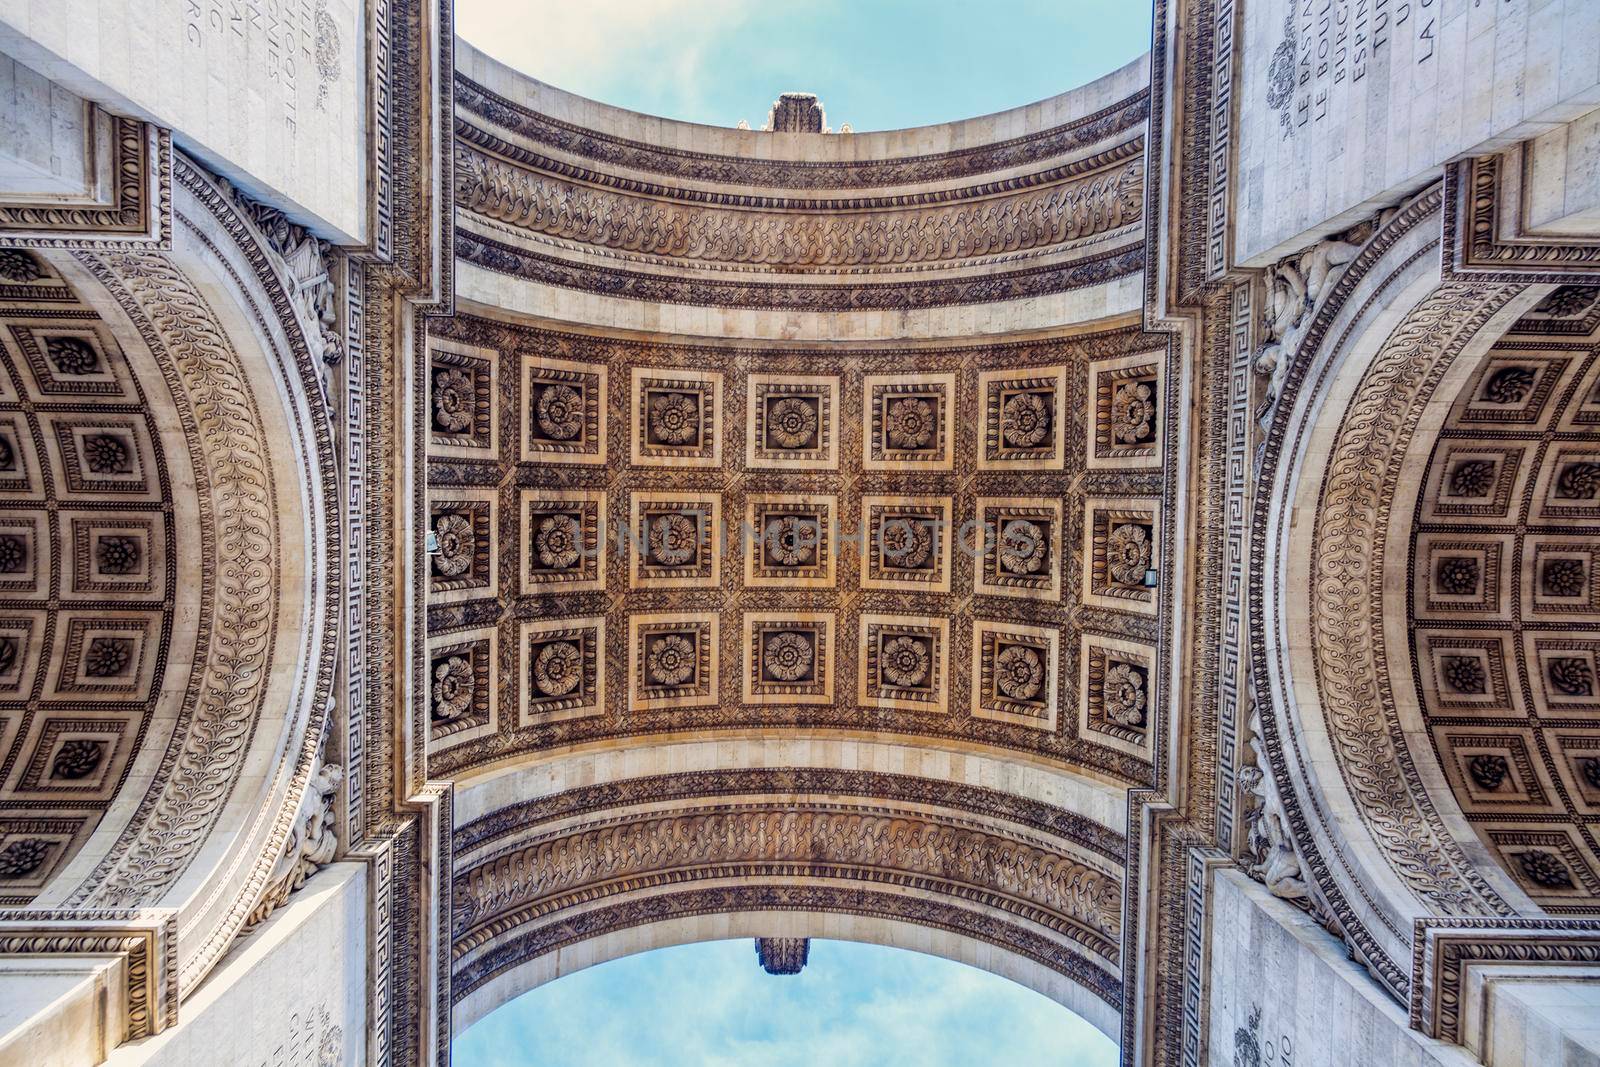 Arc de Triomphe in Paris by benkrut